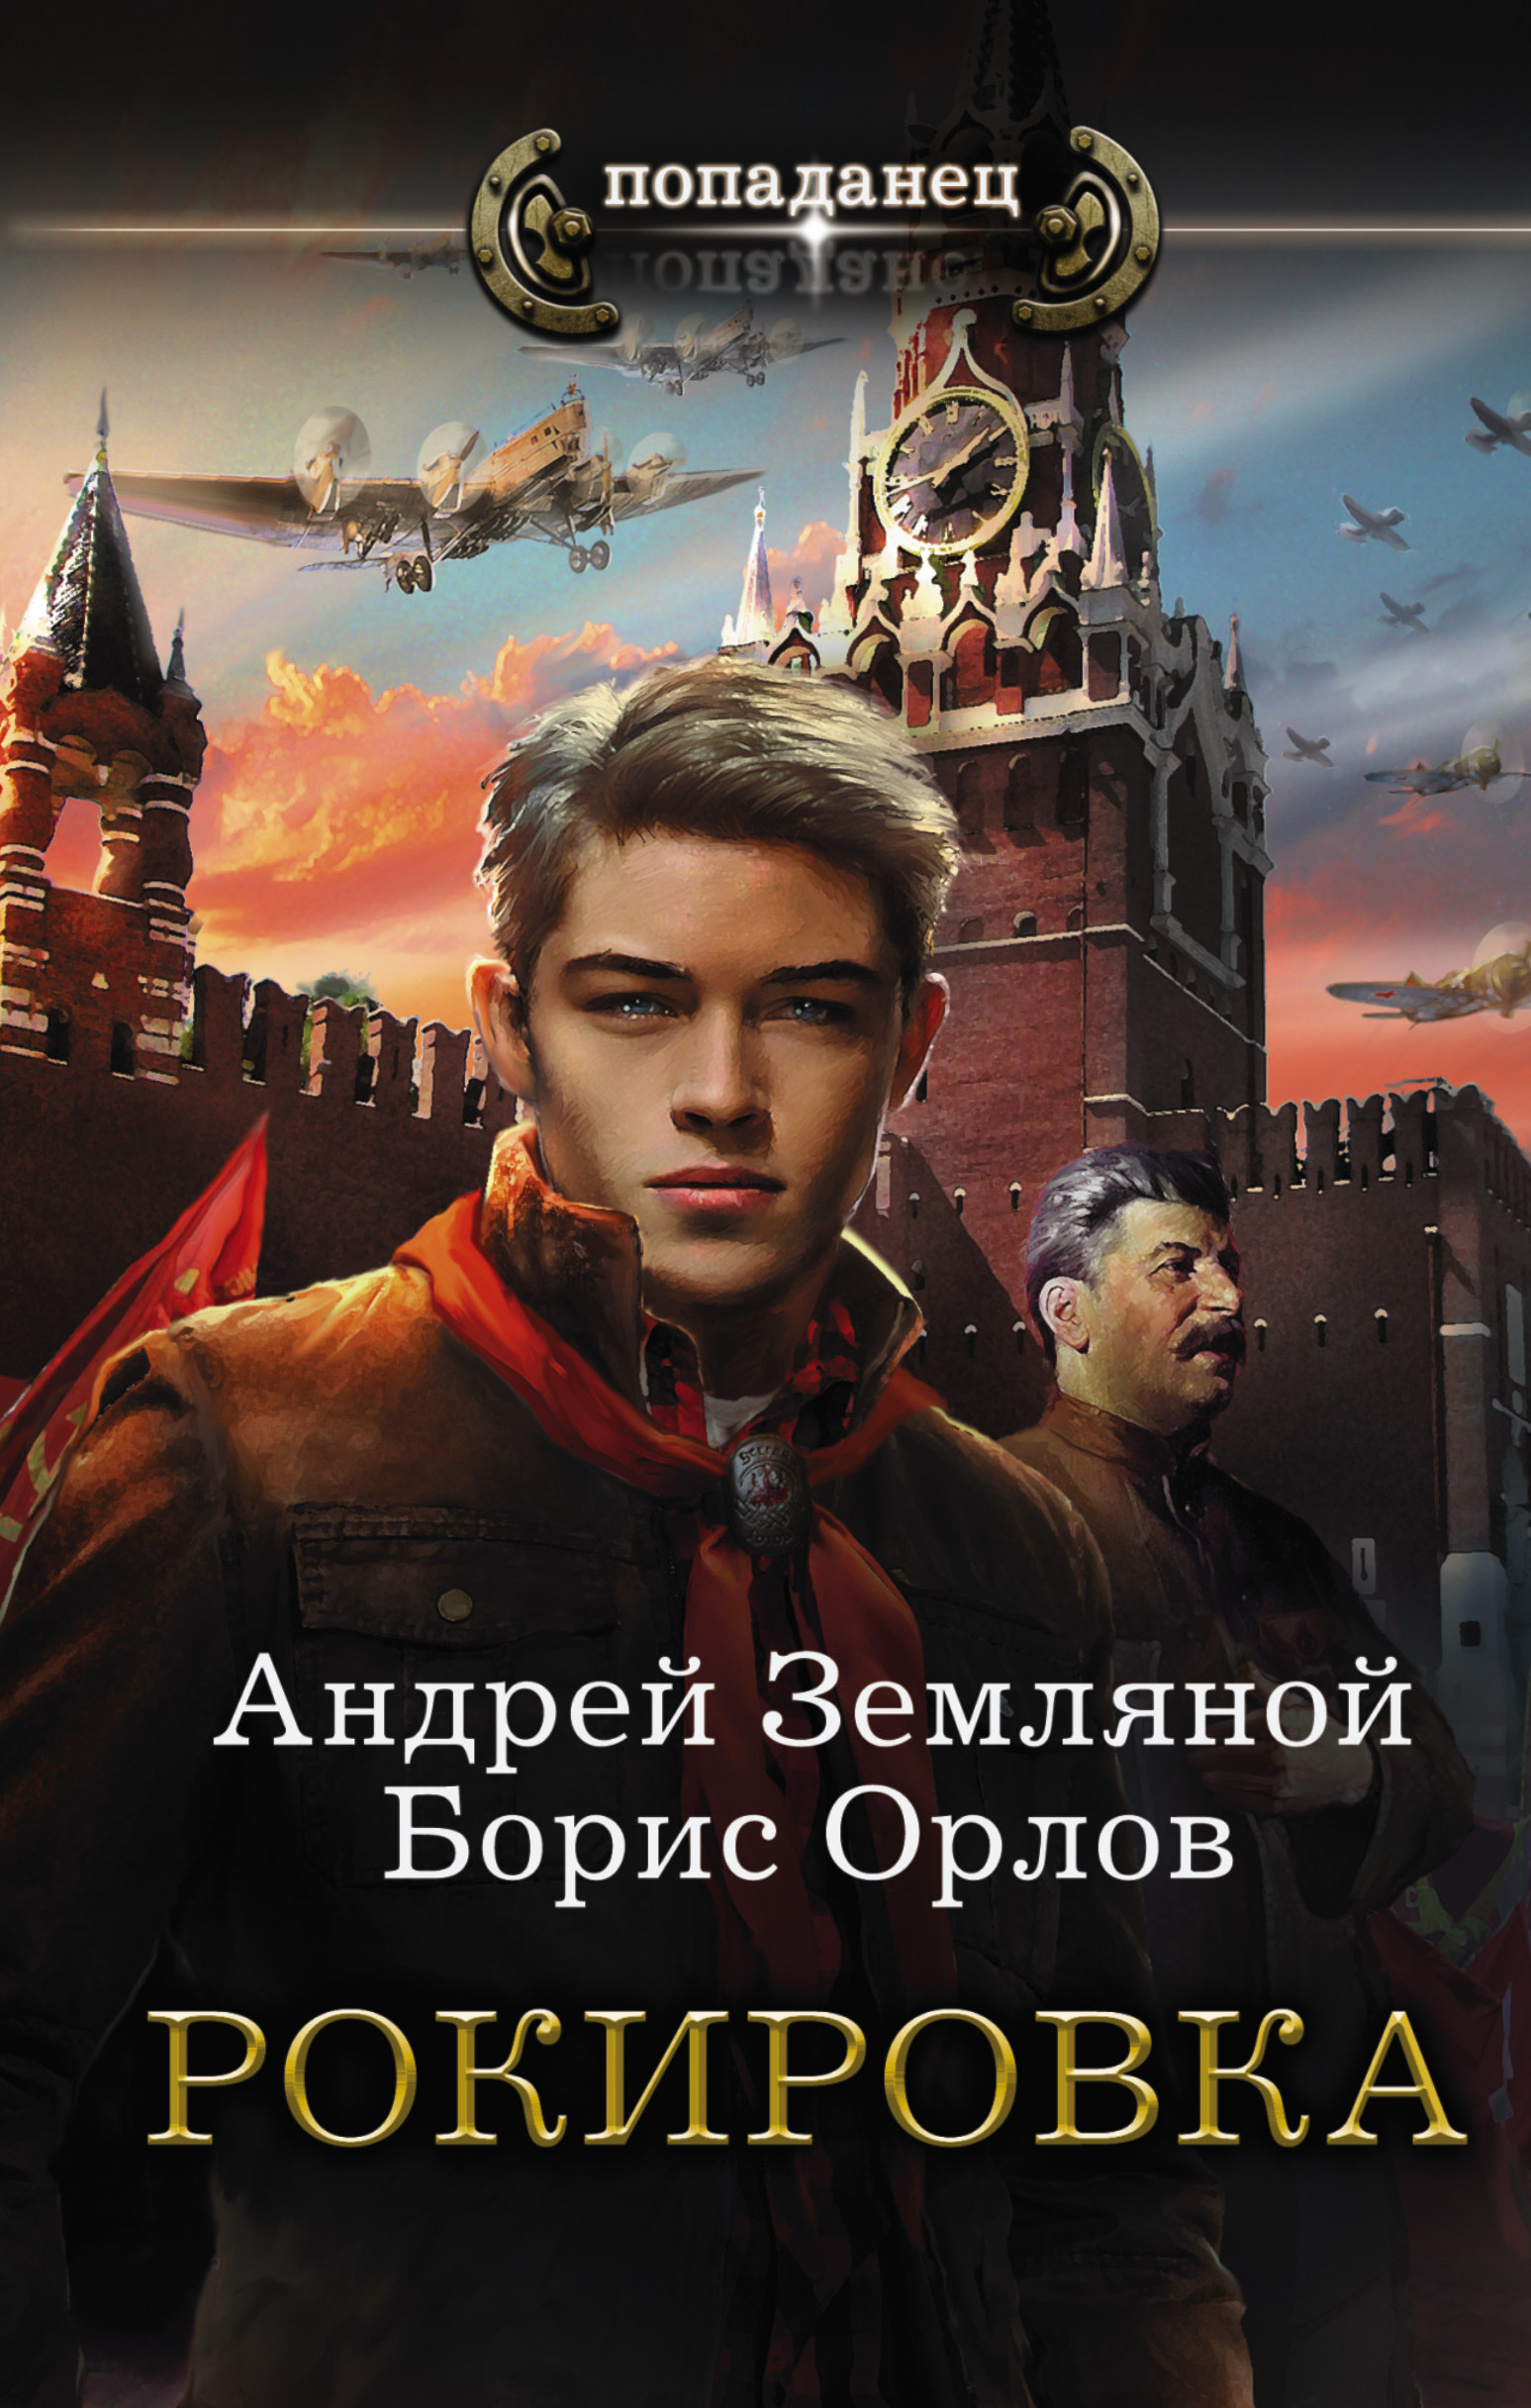 https://cdn.eksmo.ru/v2/ASE000000000722150/COVER/cover13d.jpg